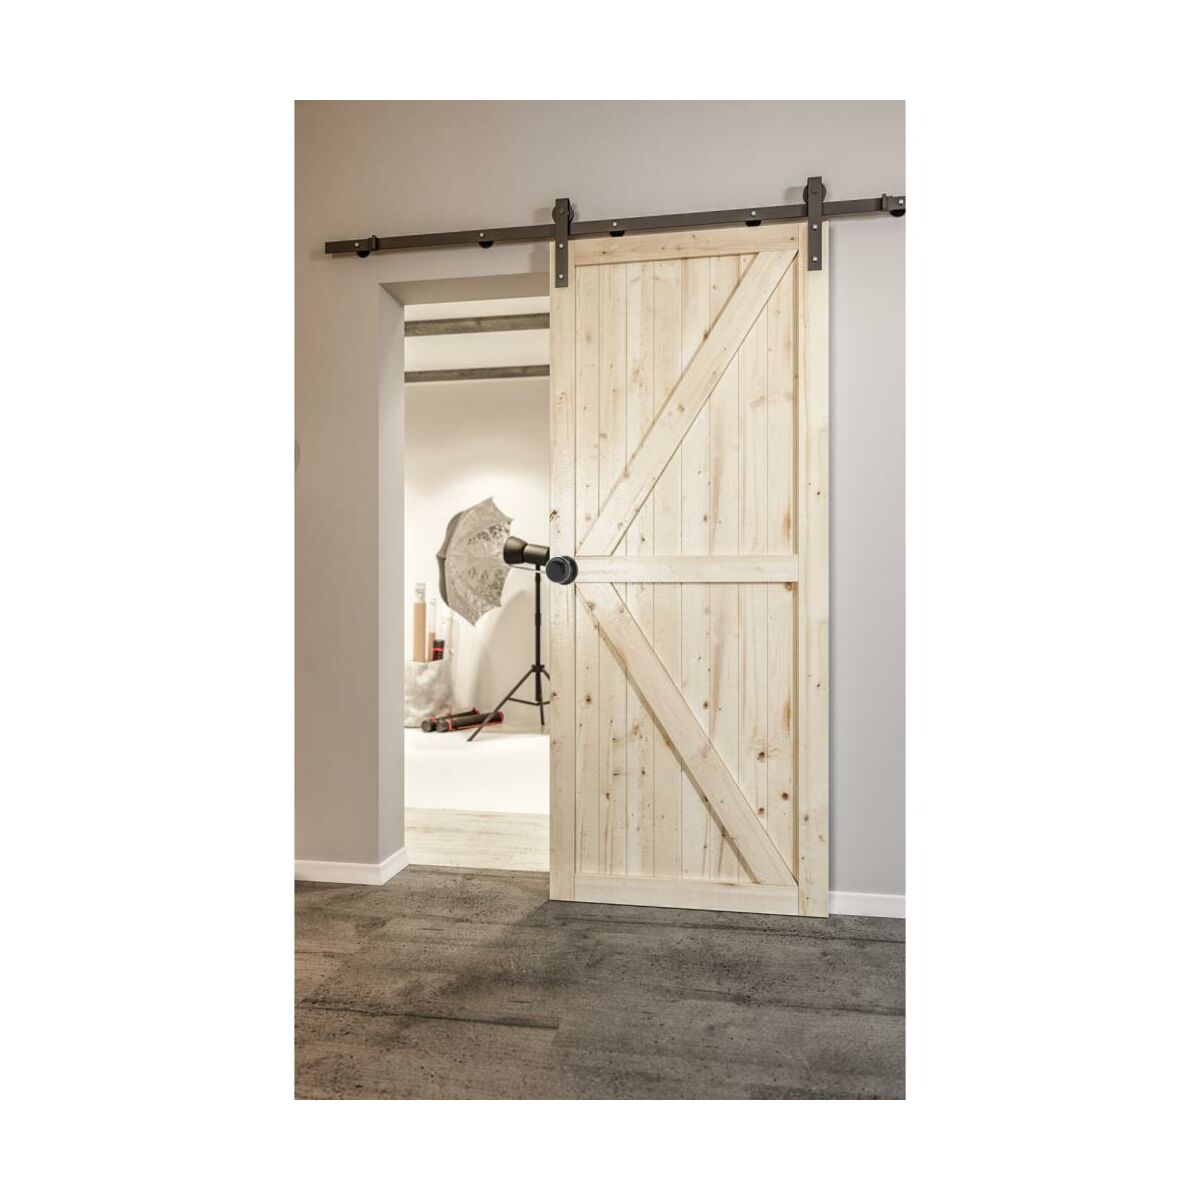 Drzwi przesuwne drewniane Loft II 60 Radex